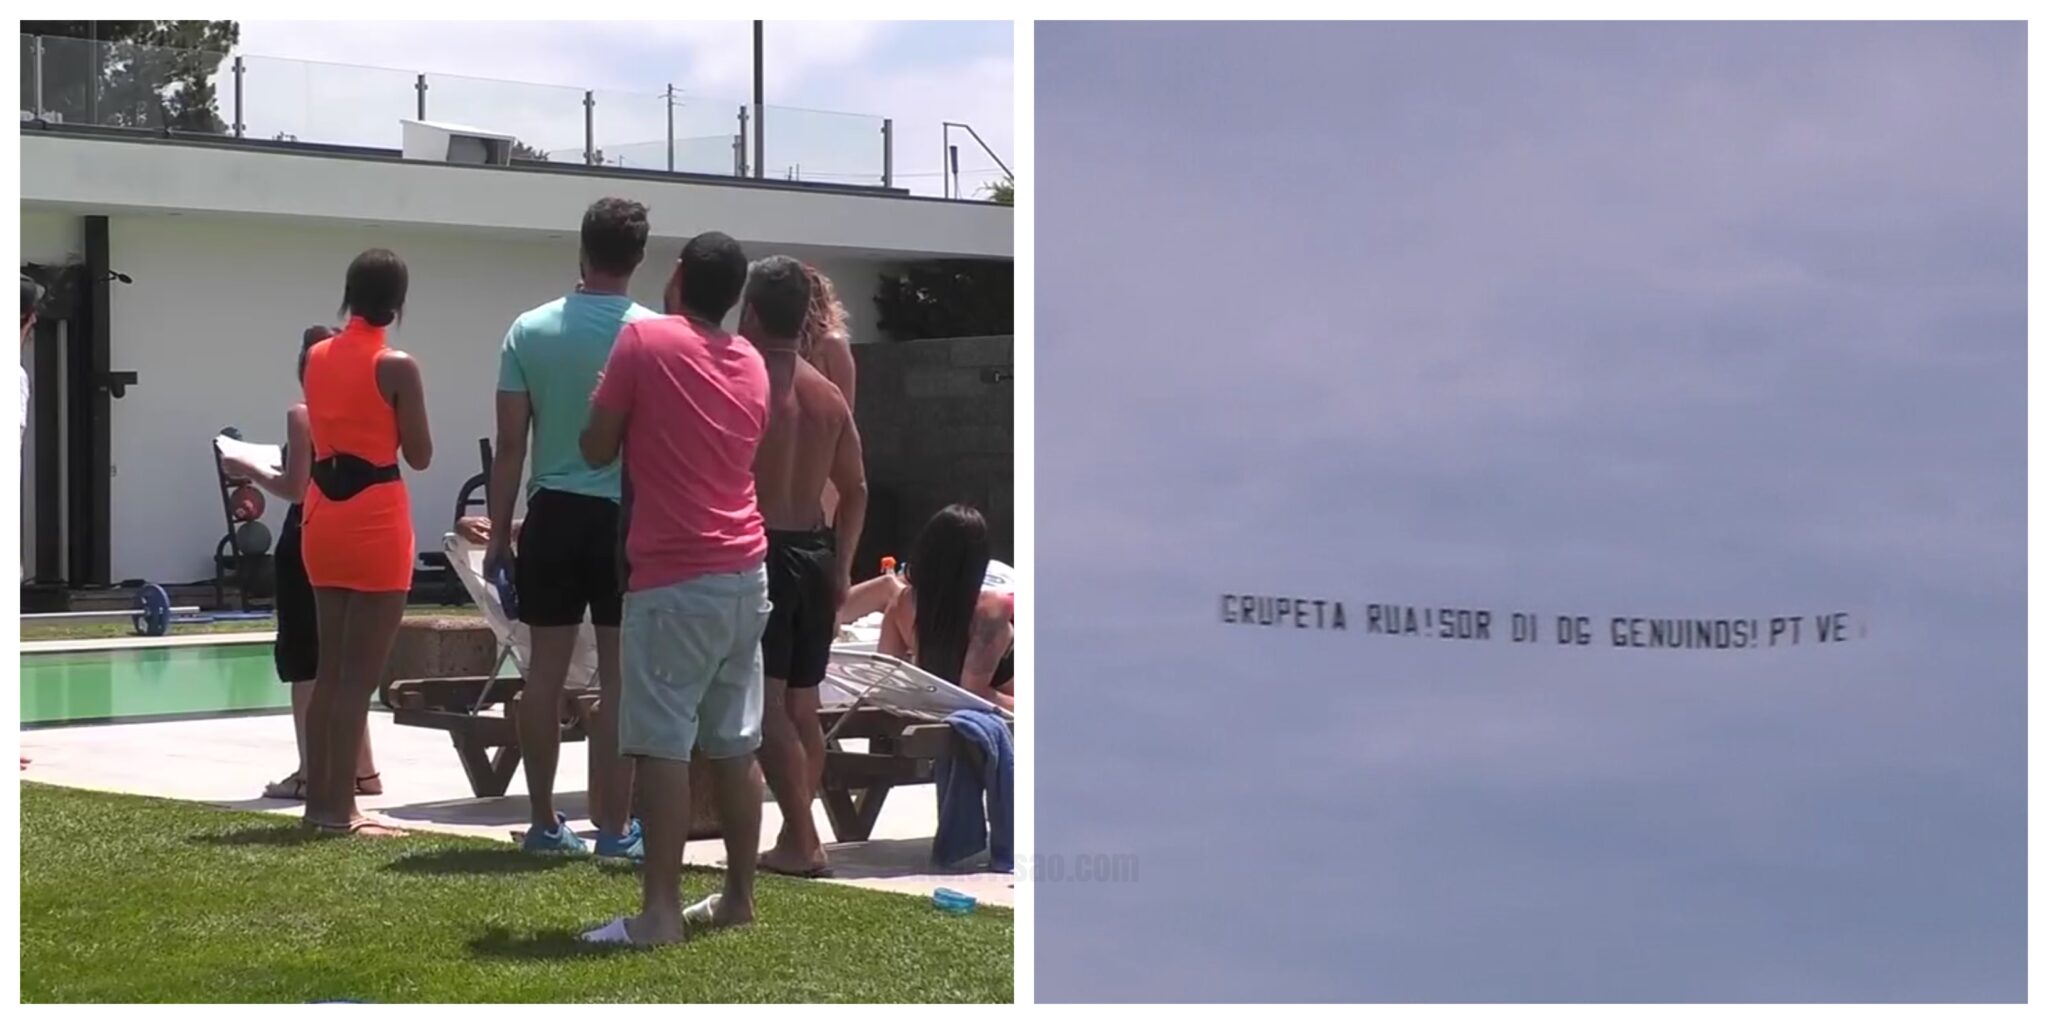 Big Brother Aviao Polemico Scaled Avião Com Mensagem Polémica Passa Na Casa Do 'Big Brother'